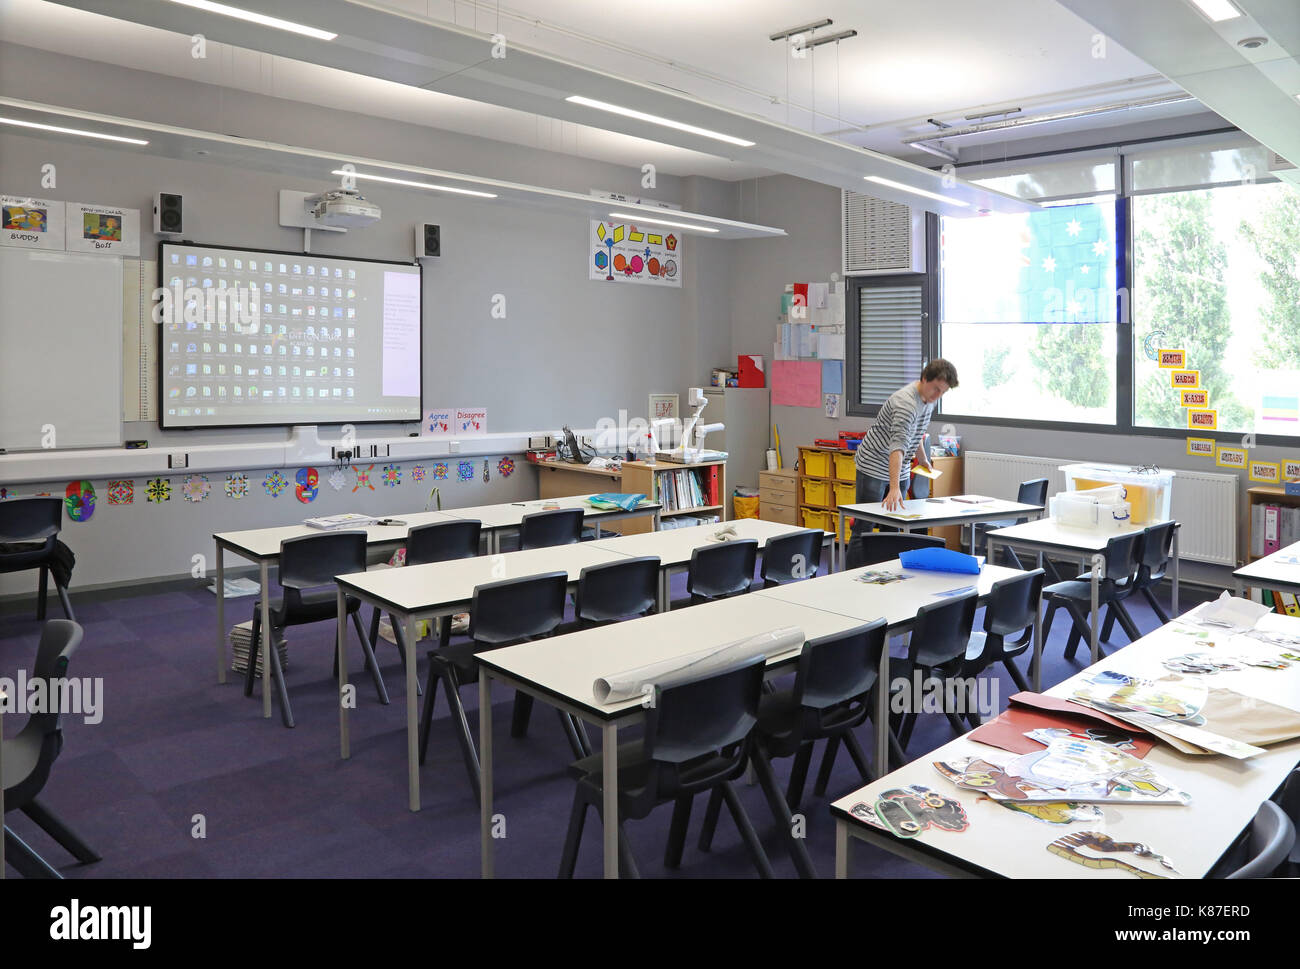 Ein Lehrer arbeiten alleine in einem modernen Unterricht in einem neuen London secondary school. Traditionelle Layout mit Schreibtischen mit Blick auf einen großen Bildschirm. Stockfoto